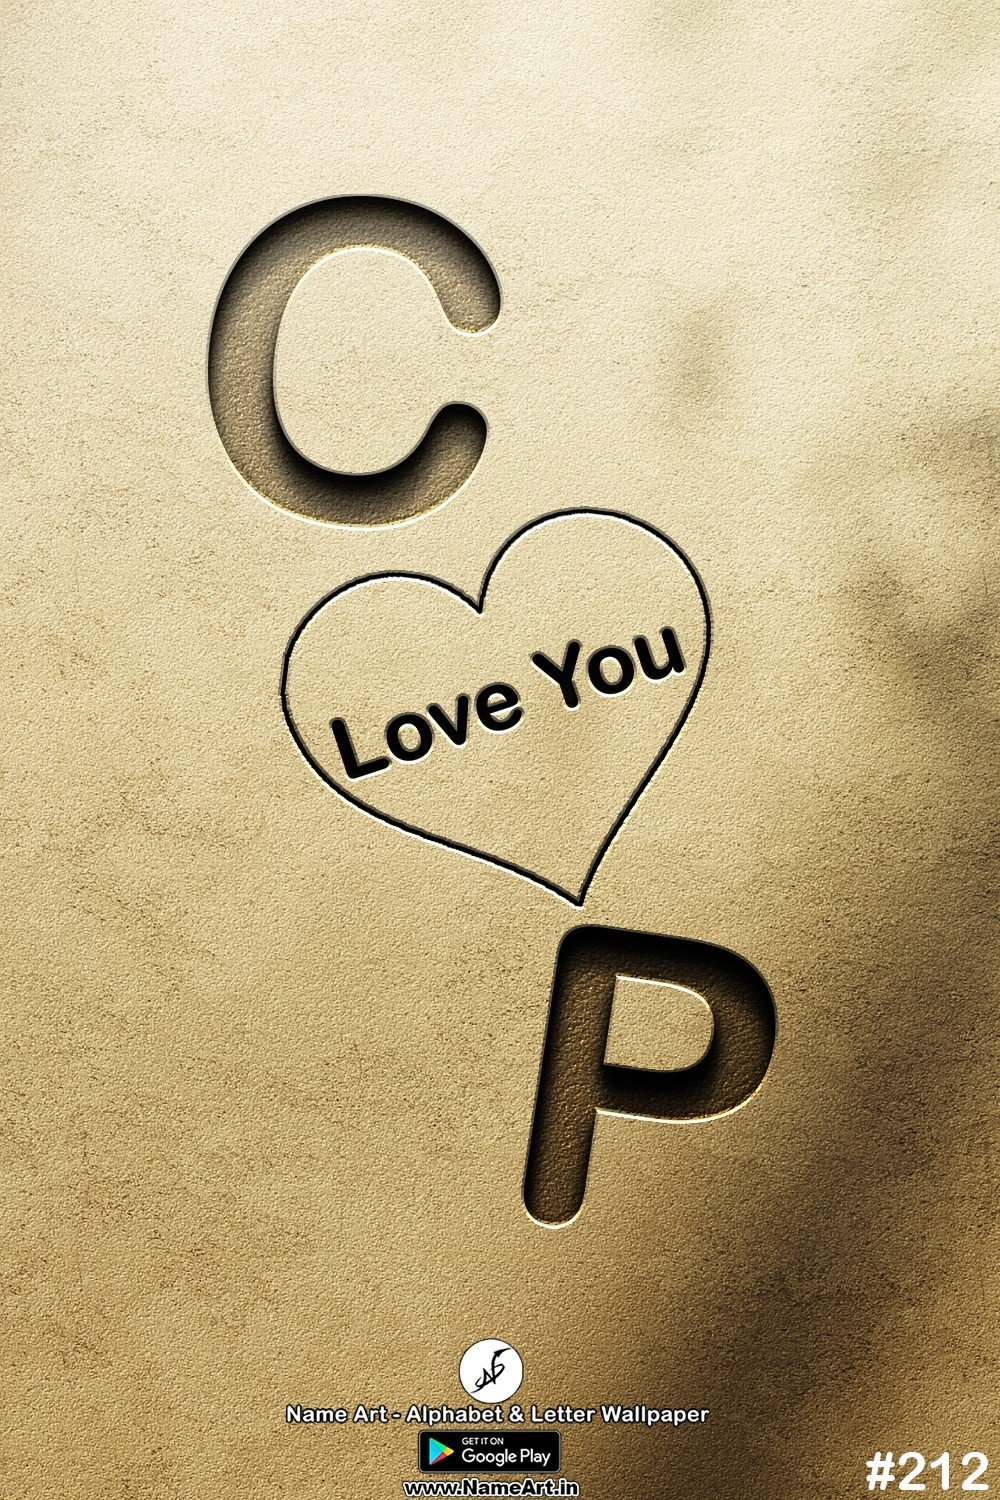 CP | Whatsapp Status DP CP | CP Love Status Cute Couples Whatsapp Status DP !! | New Whatsapp Status DP CP Images |